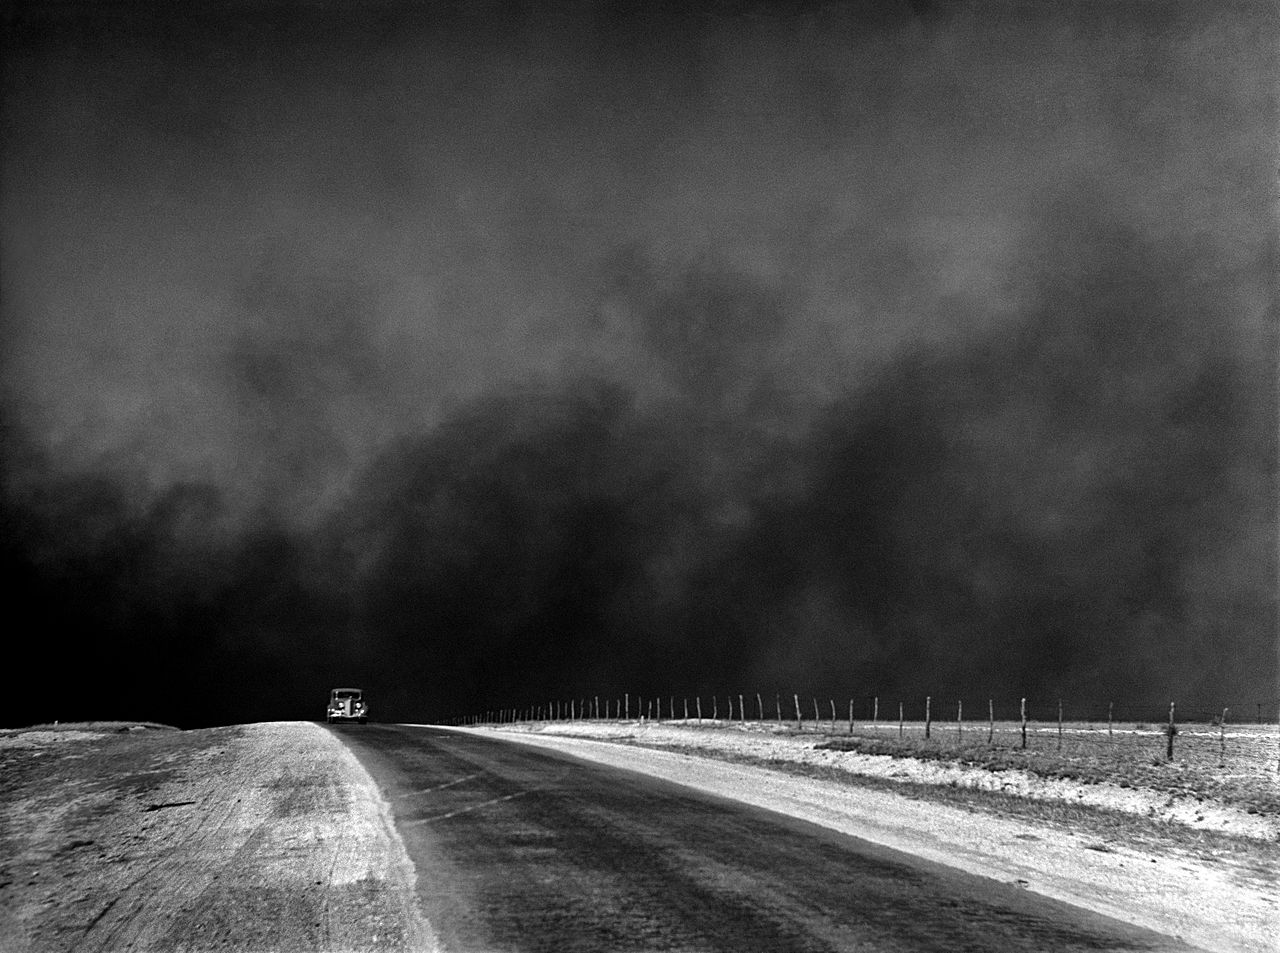 A car drives through the Dust Bowl, Texas, 1936